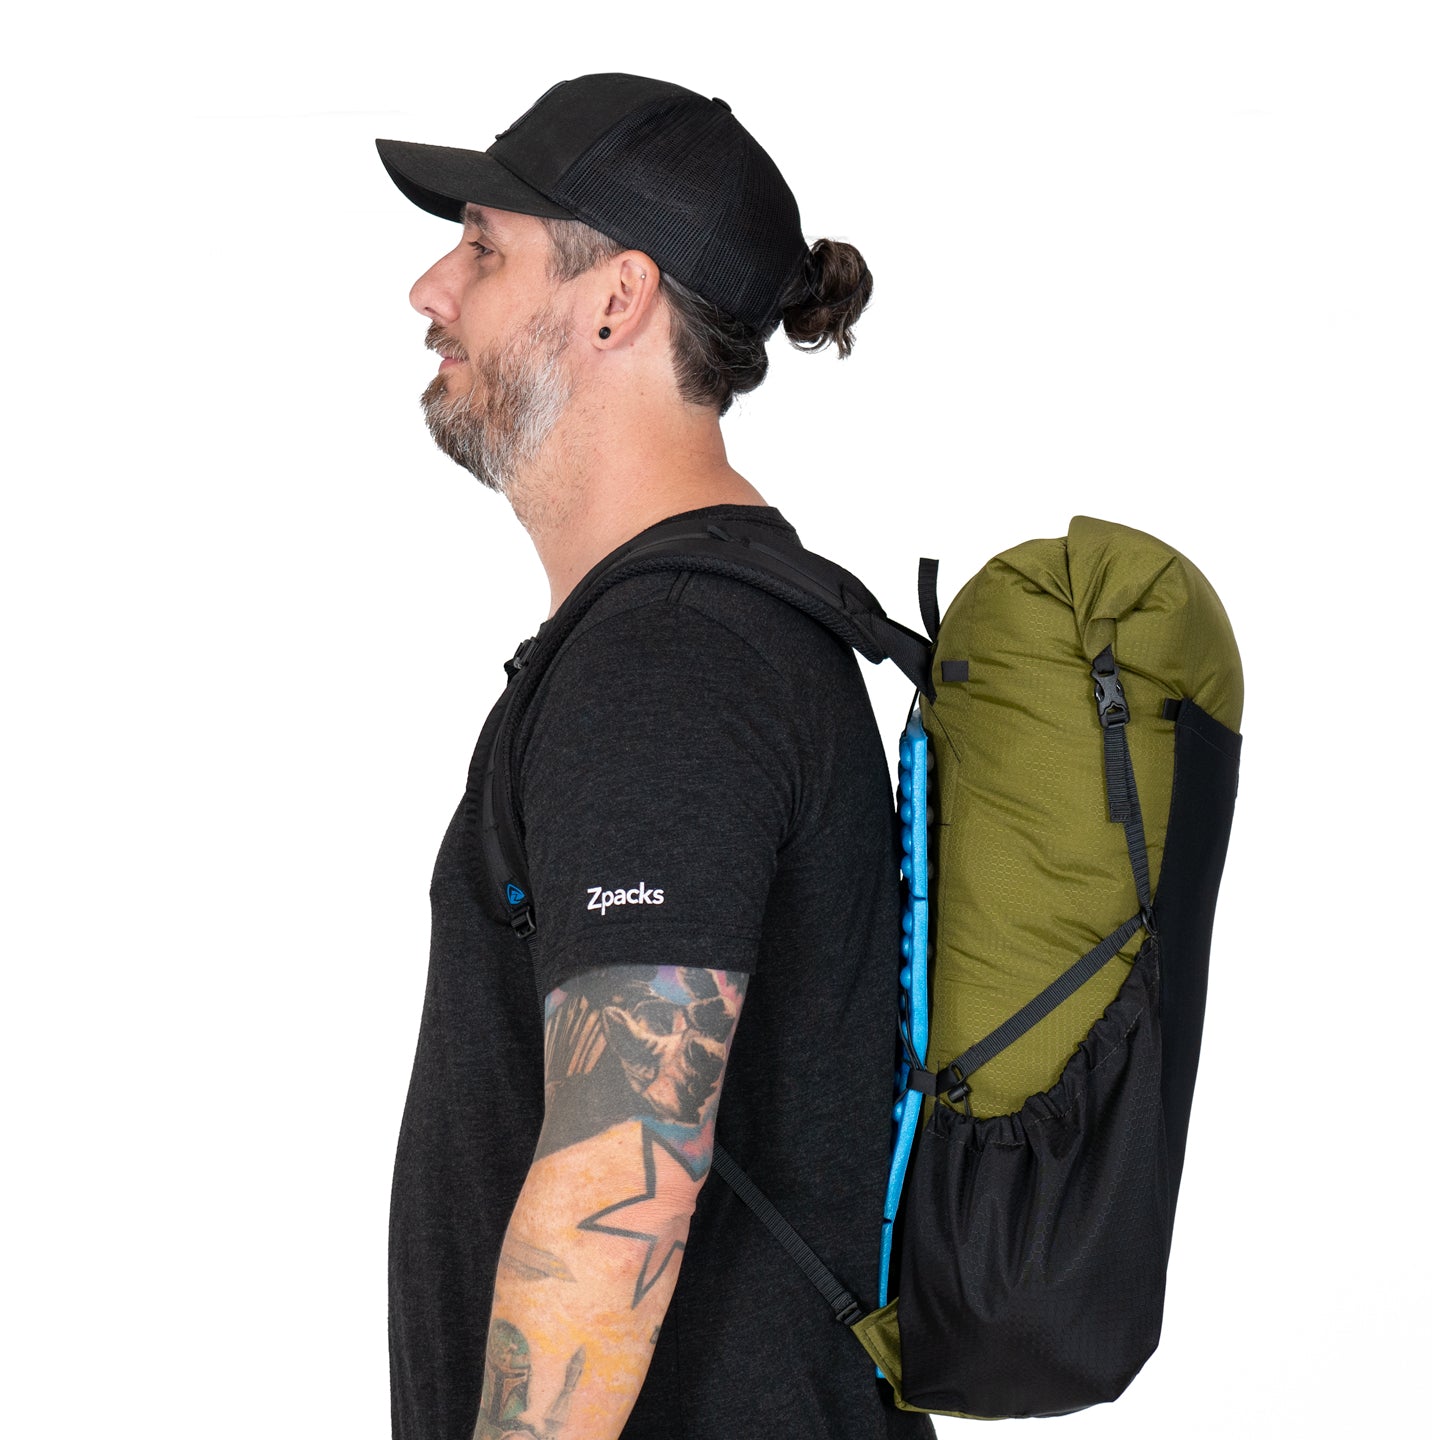 Sub-Nero 30L ROBIC Backpack – Zpacks